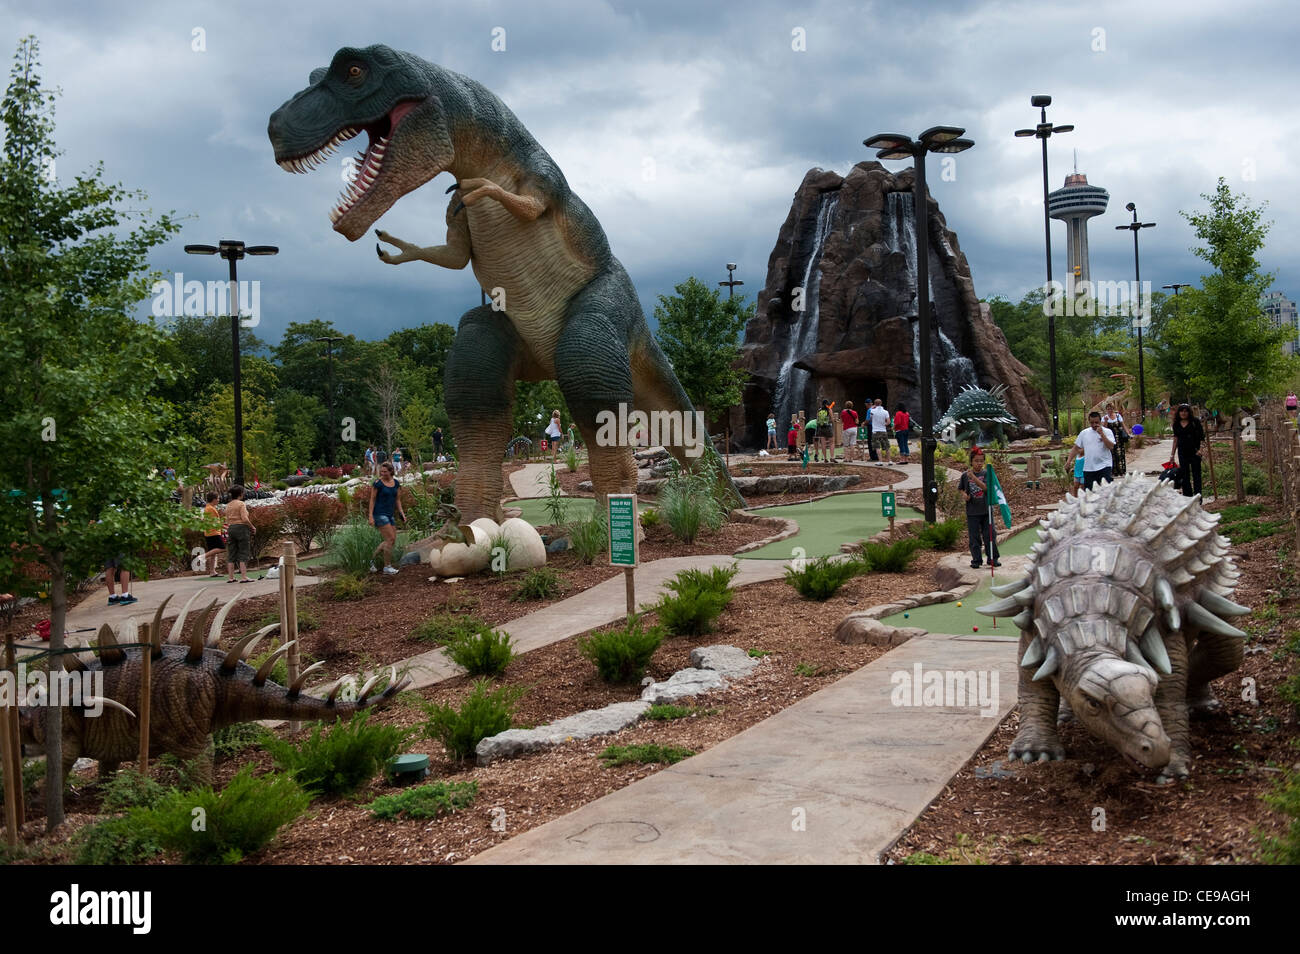 Imaginação, Divertimento, Jogo, Menina, Dinoaur Foto de Stock - Imagem de  menina, tiranossauro: 123573258